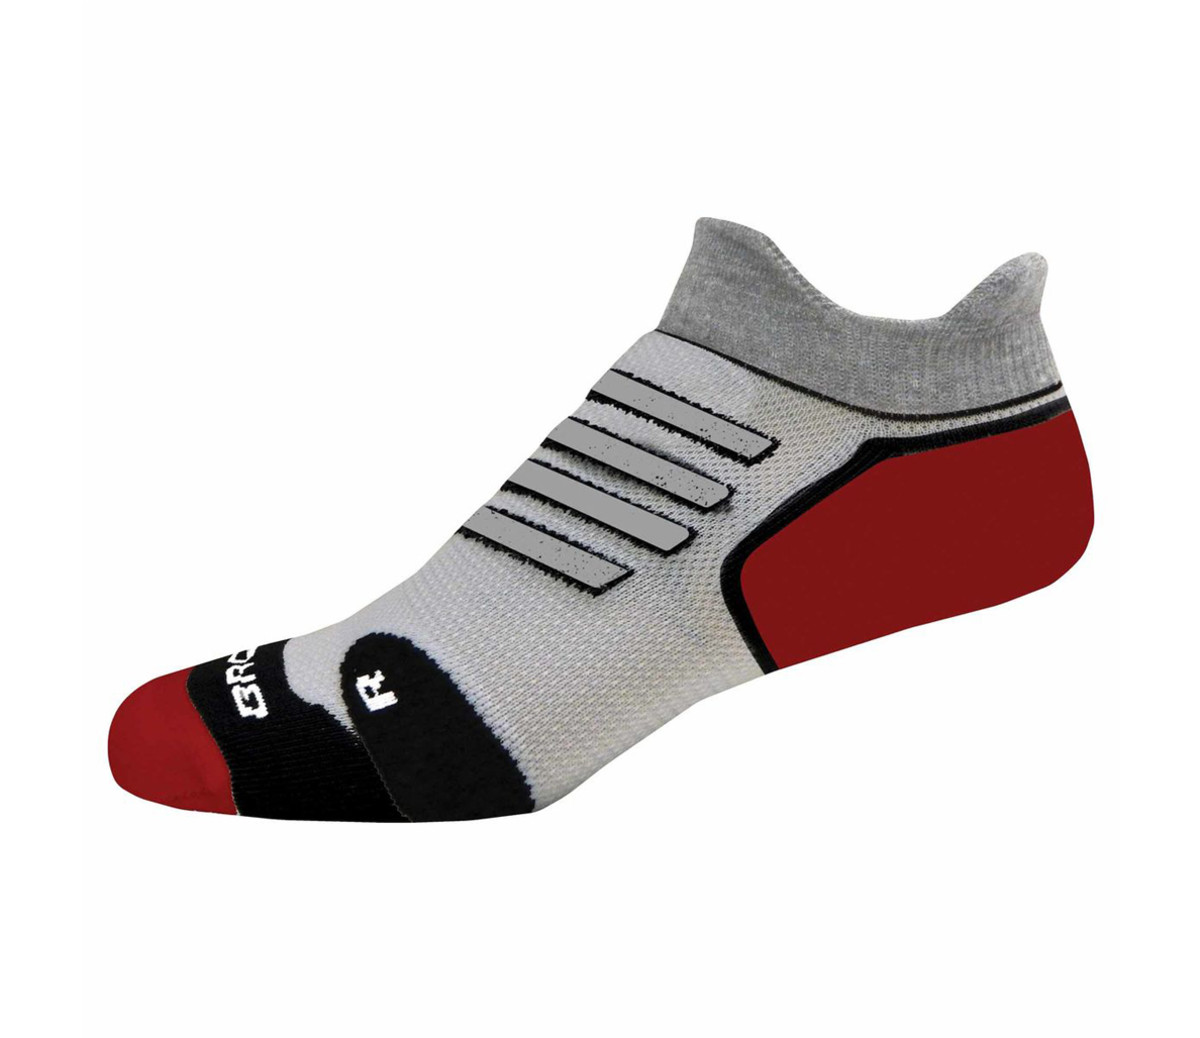 Best Socks for Sweaty Feet: Top 10 Socks for Active Men (2022) - Men's ...